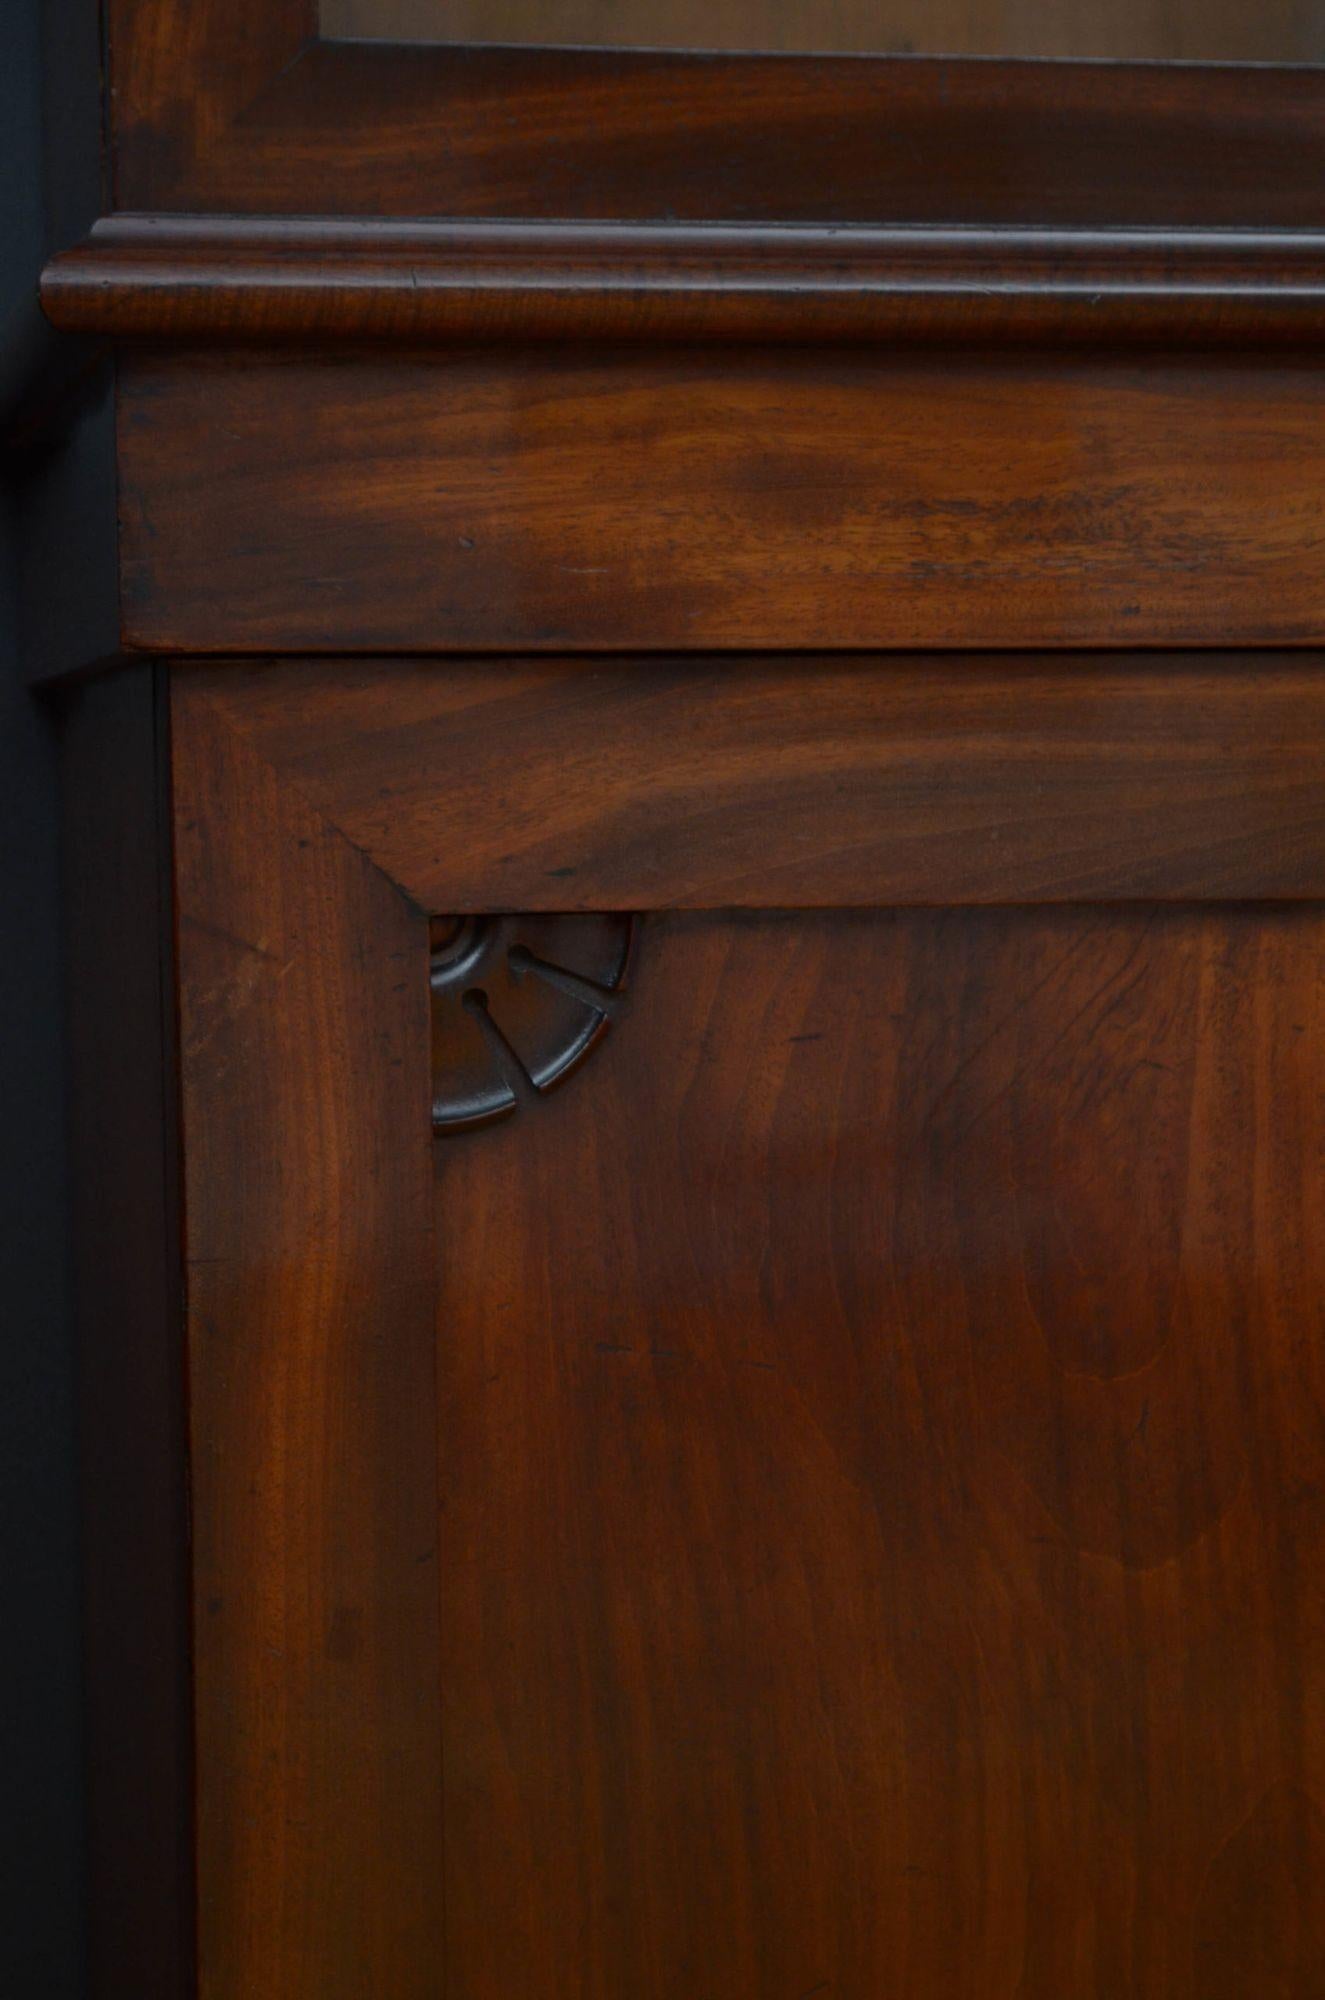 Sn5141 Großes und schlankes William-Bücherregal aus Mahagoni mit geschnitztem Giebel und profiliertem Gesims über einem Paar verglaster Türen, die mit einem originalen Arbeitsschloss und einem Schlüssel ausgestattet sind und vier höhenverstellbare